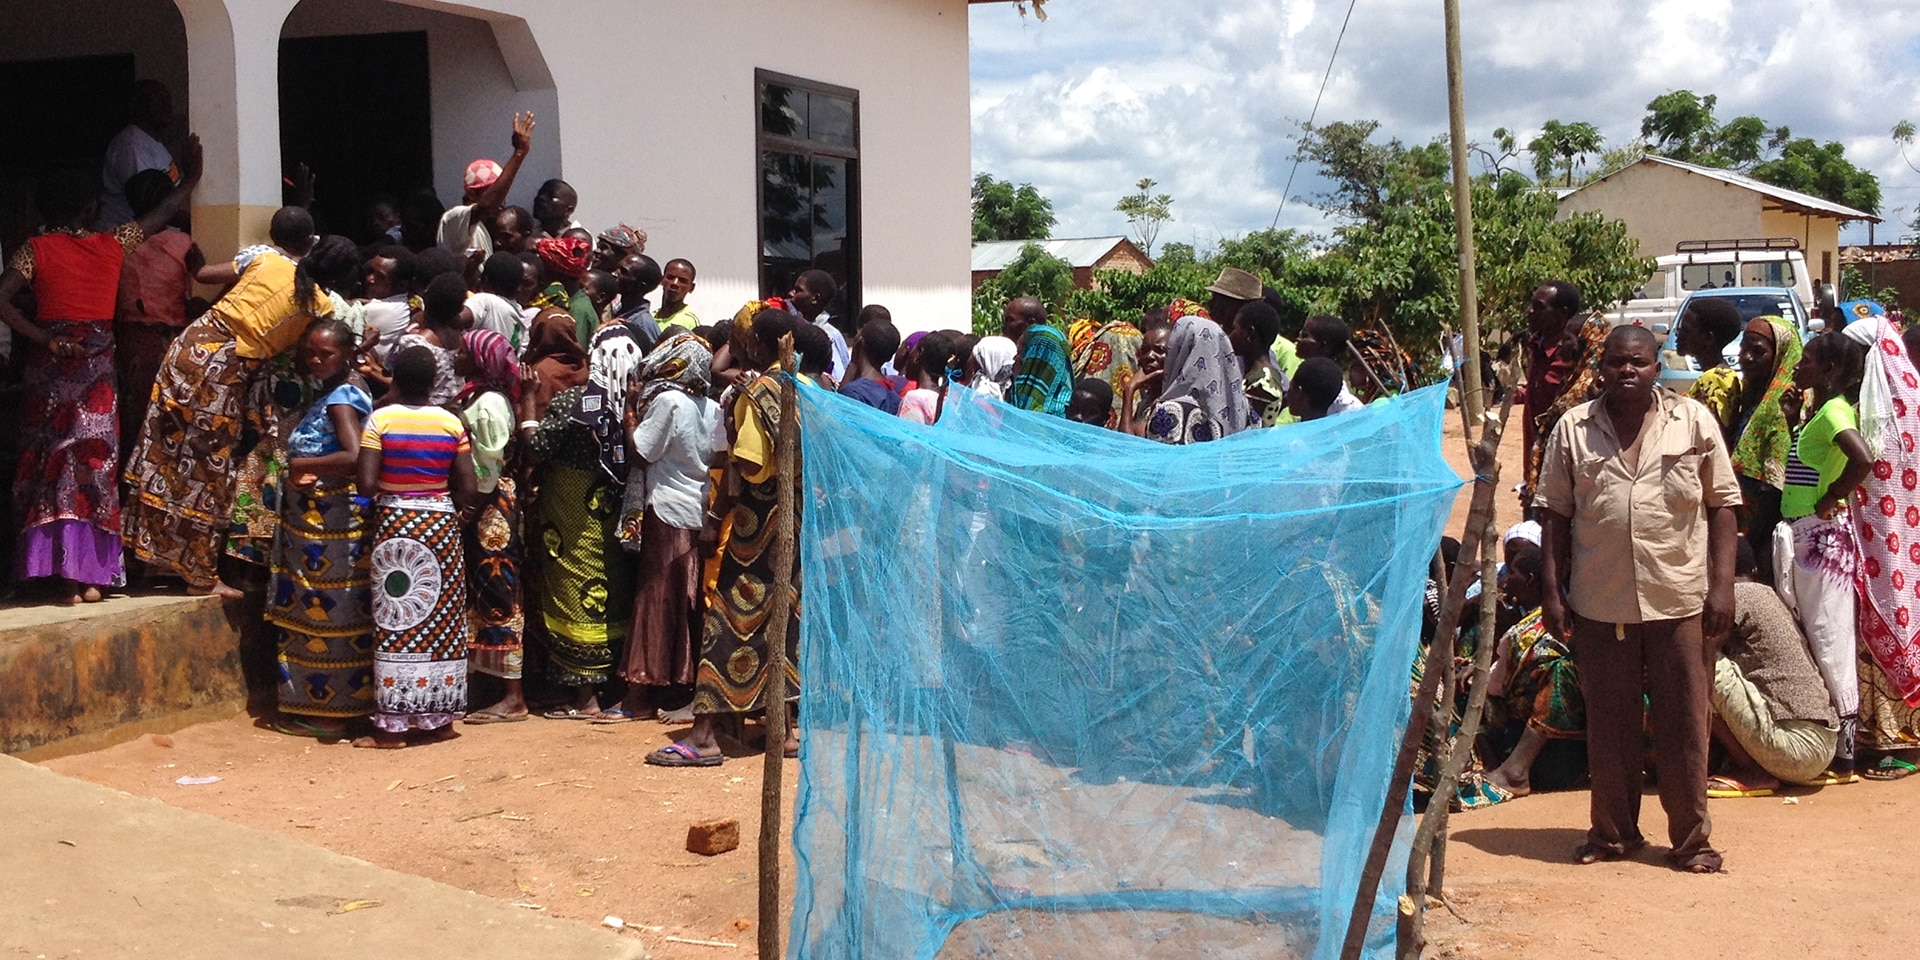 In einem tansanischen Dorf warten Menschen in einer Schlange auf ihre Moskitonetze. Im Vordergrund ein blaues Moskitonetz. 